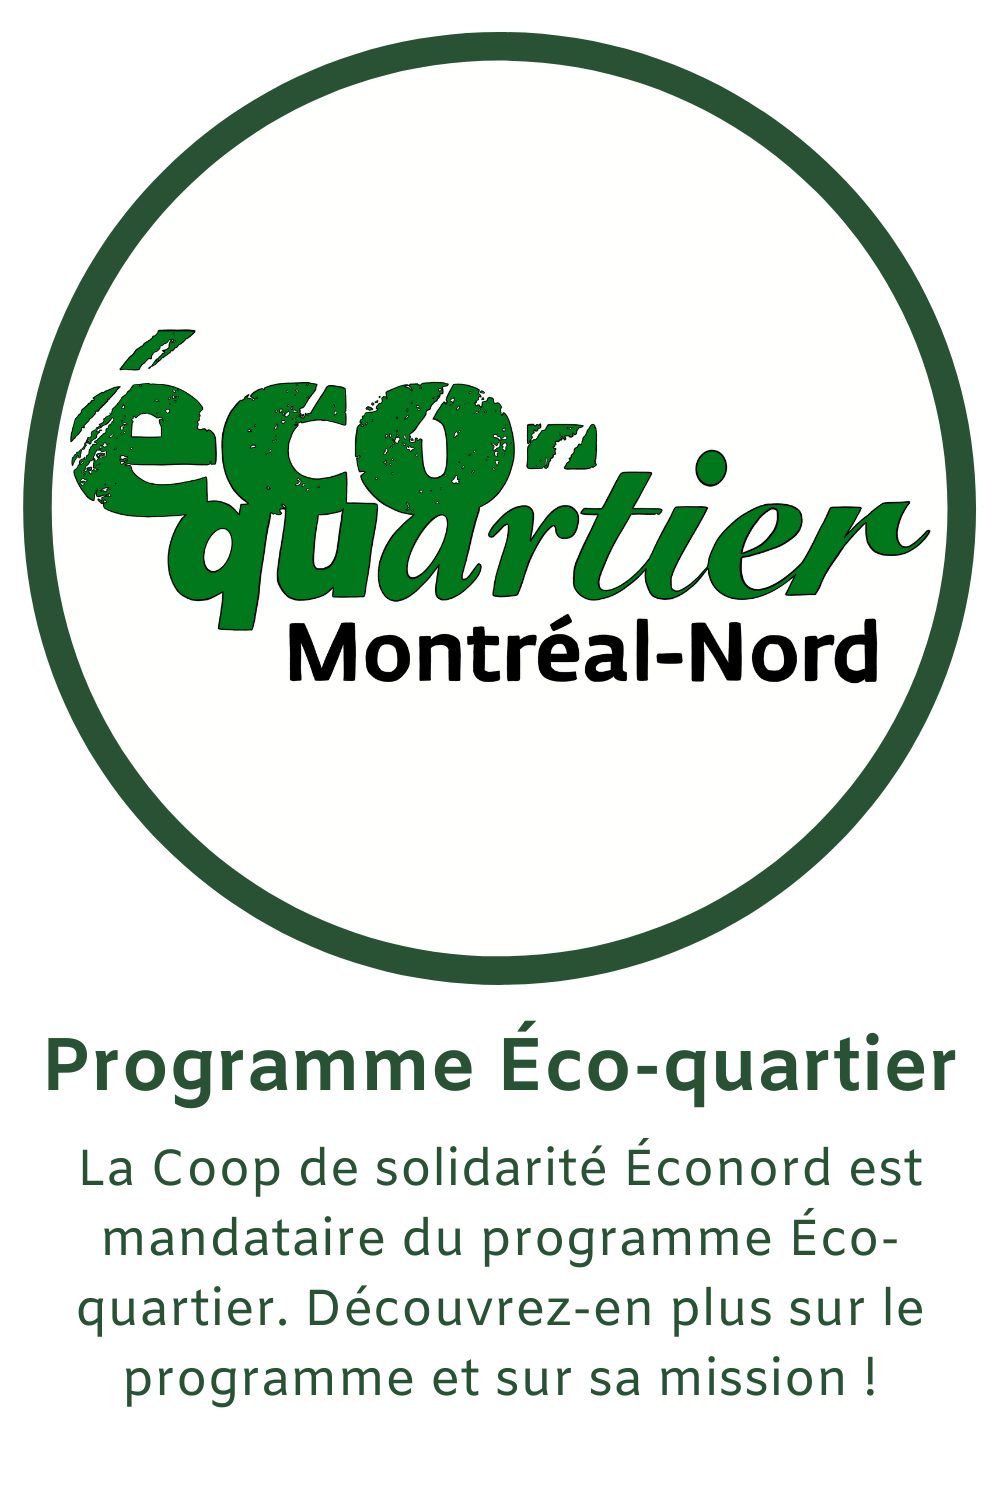 La Coop de solidarité Éconord est mandataire du programme Éco-quartier. Découvrez-en plus sur le programme et sur sa mission!"